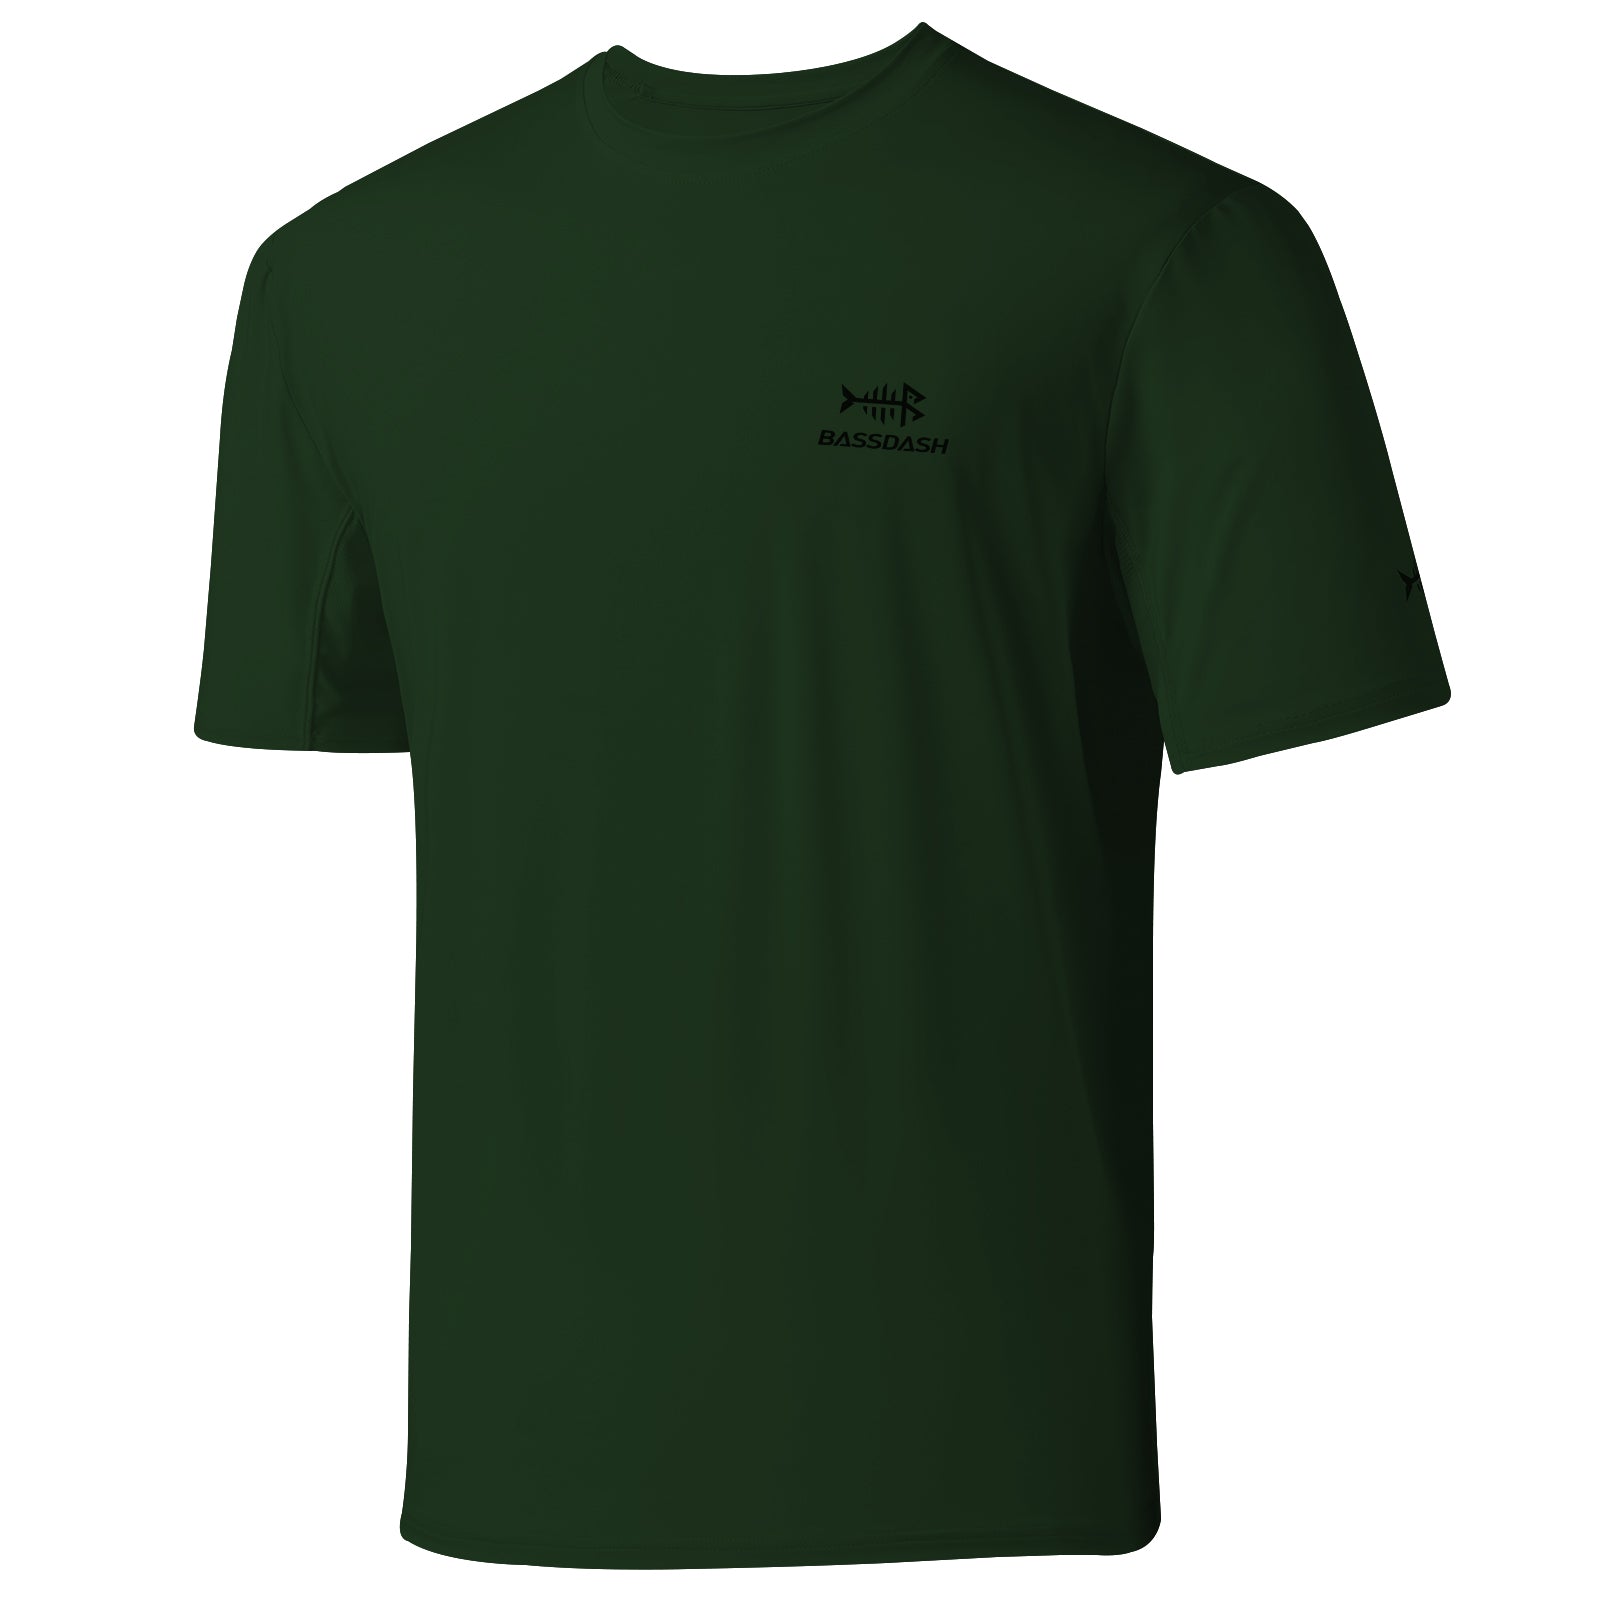 Buy BASSDASHMen's UPF 50+ Sun Protection Fishing Shirt Short